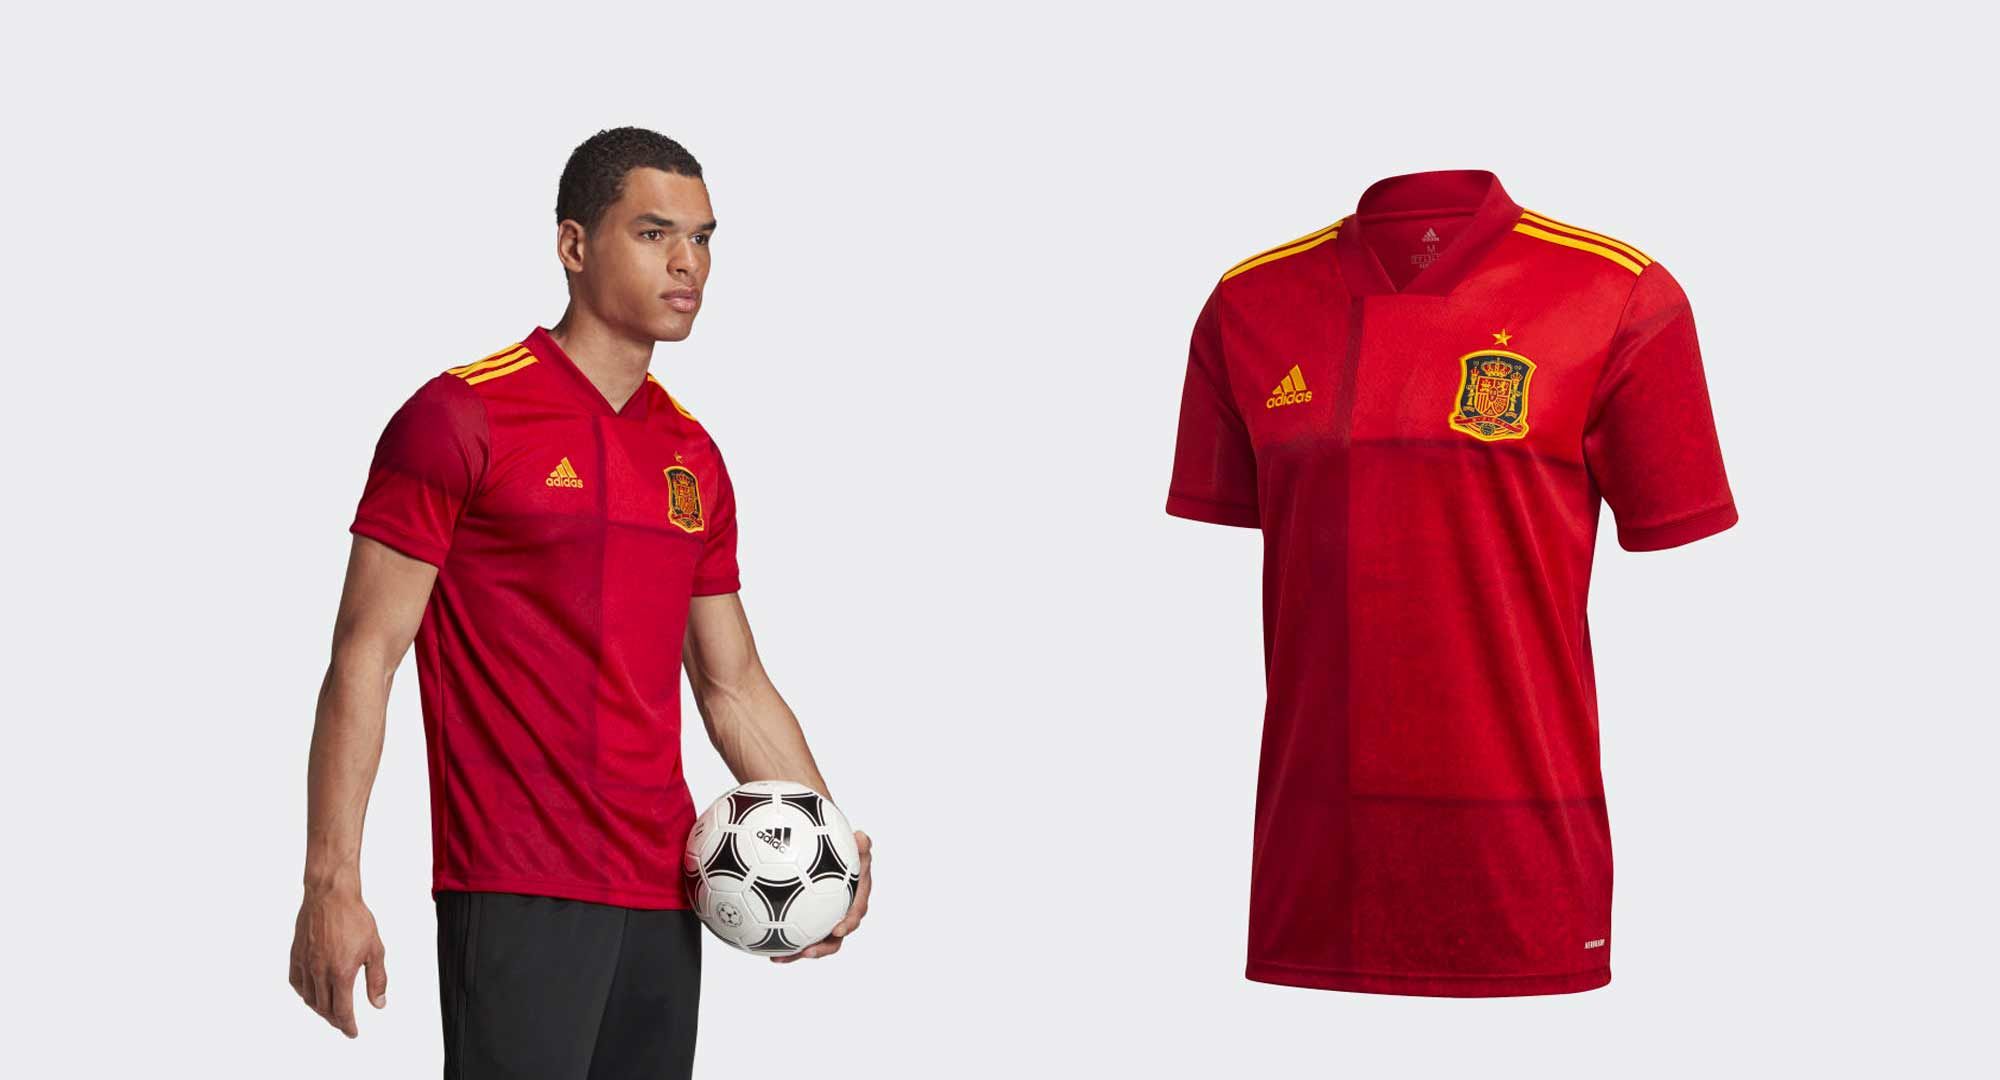 Así es la camiseta de la selección española para la Eurocopa 2021